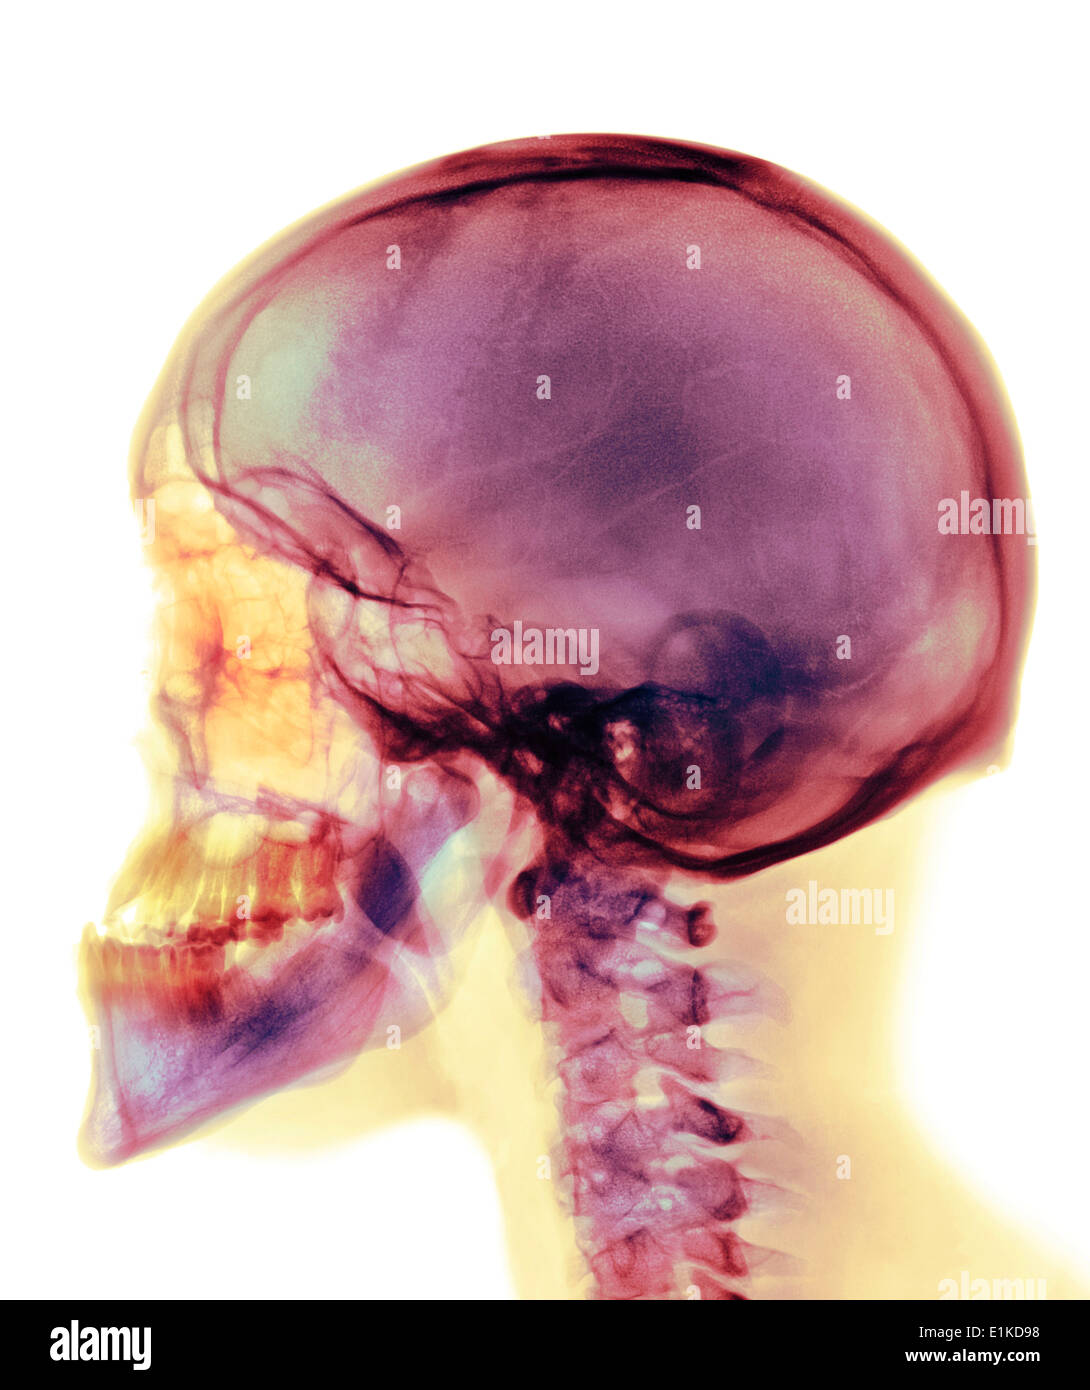 Schädel farbig x-ray des Schädels ein 30 Jahre alter Mann. Stockfoto